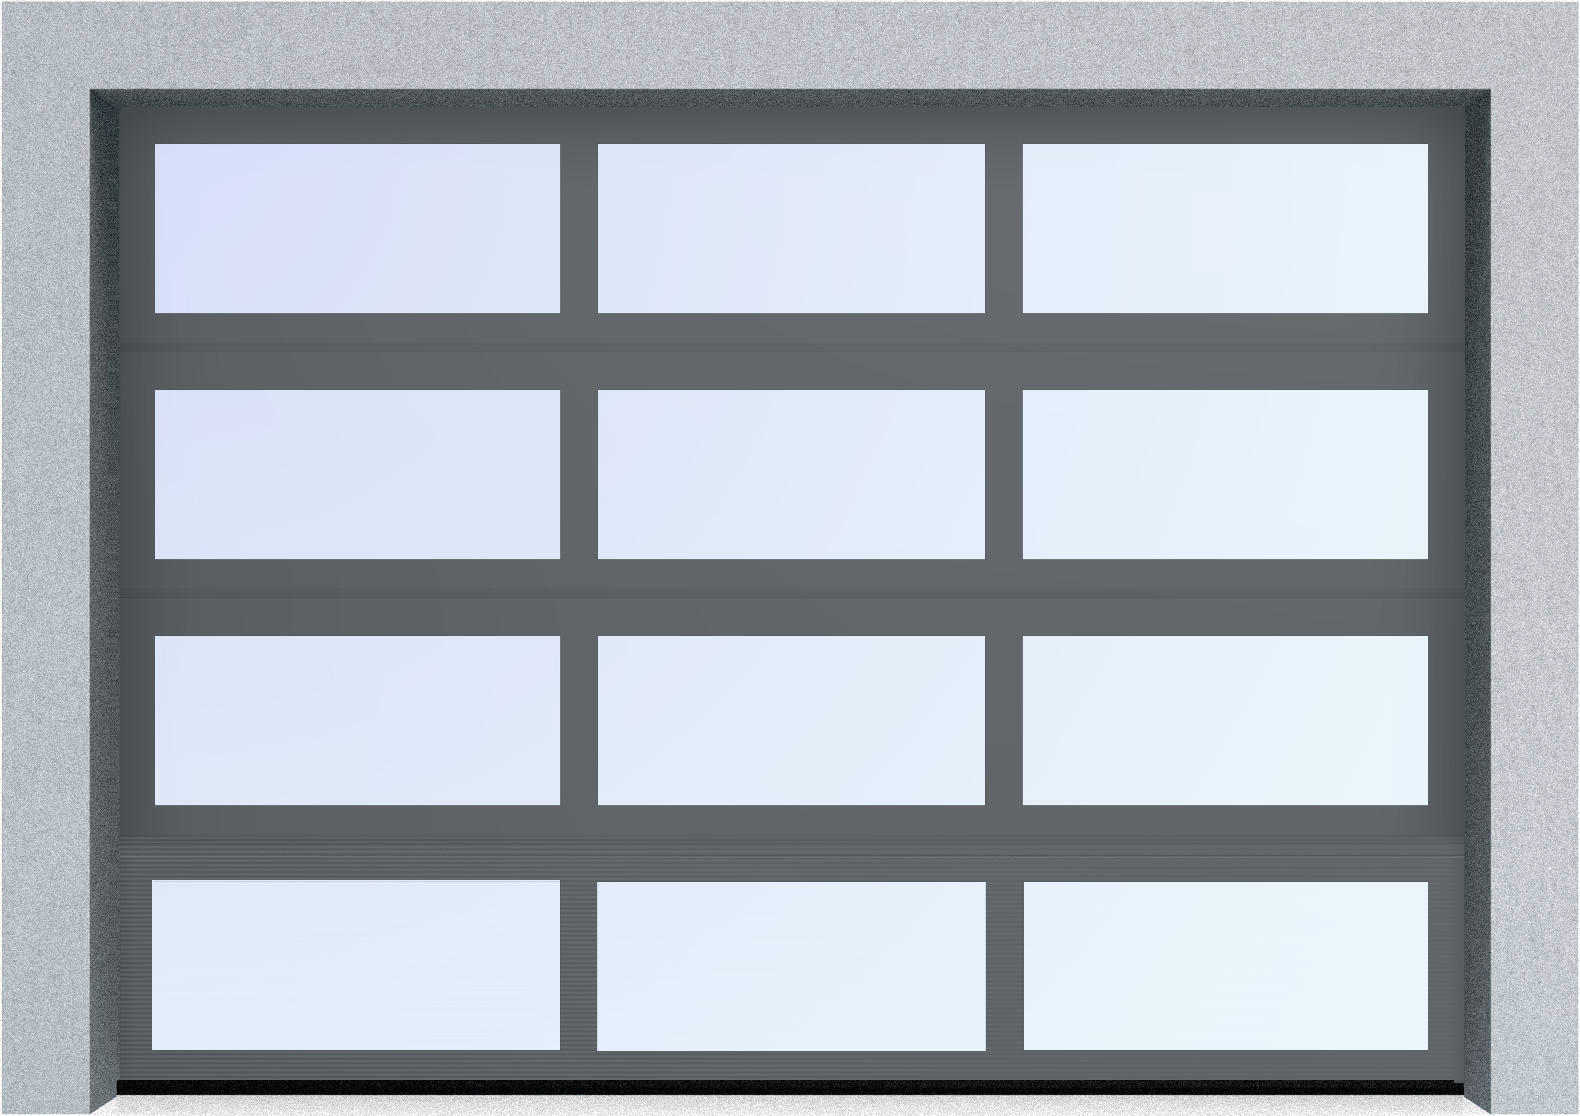  Автоматические секционные панорамные ворота серии AluTrend (АЛП) 3875х4500 стандартные цвета, фото 5 